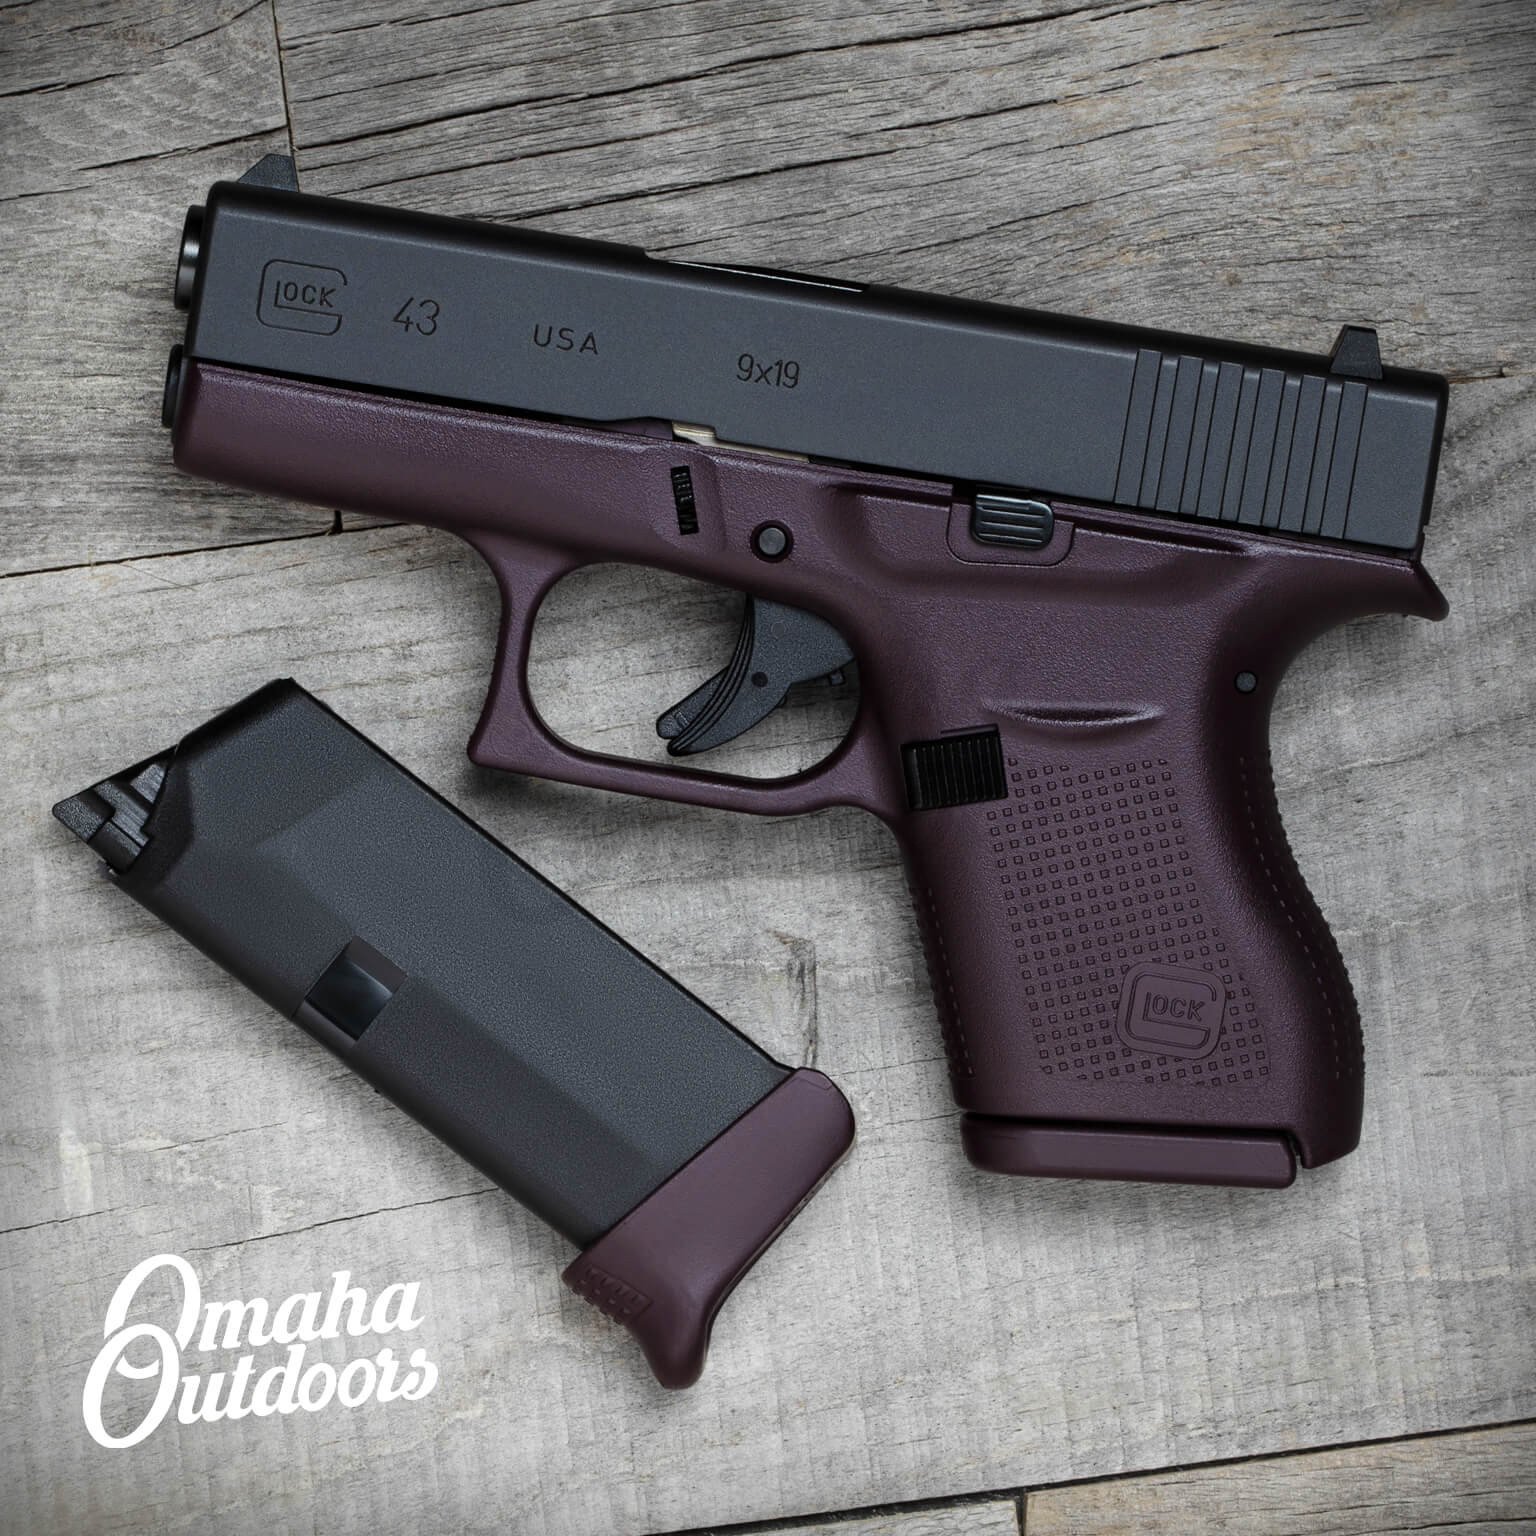 Genuine Glock Model 43 Pistol Gun Handgun Magazine Black 9mm Polymer 6 Round 